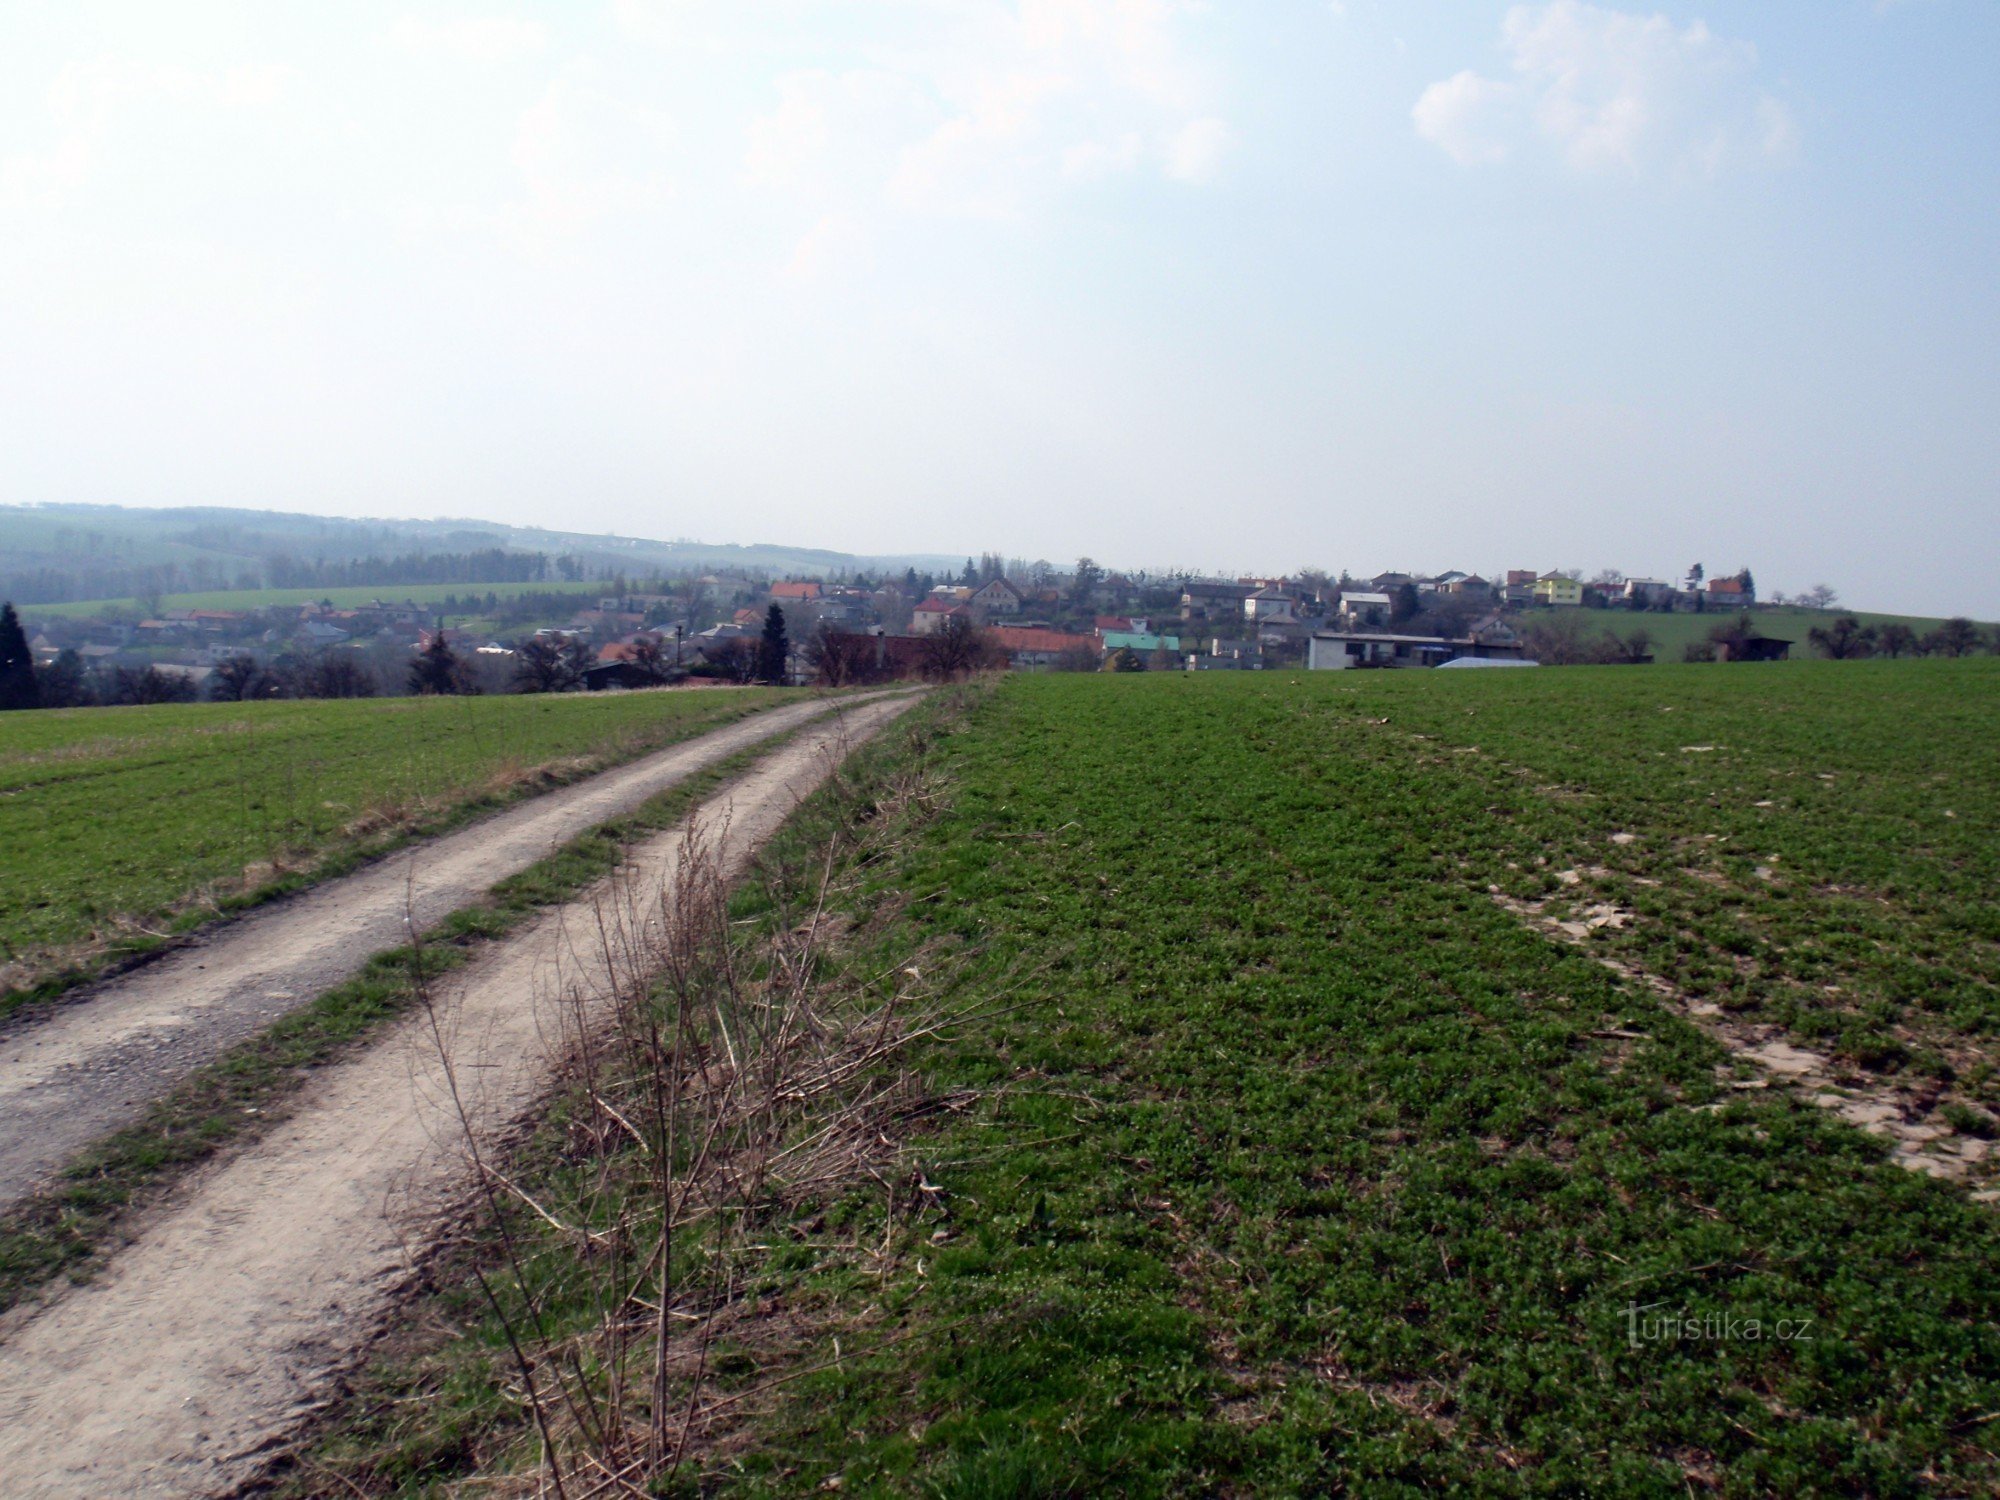 Het dorp Zbyslavice vanaf fietsroute 6191